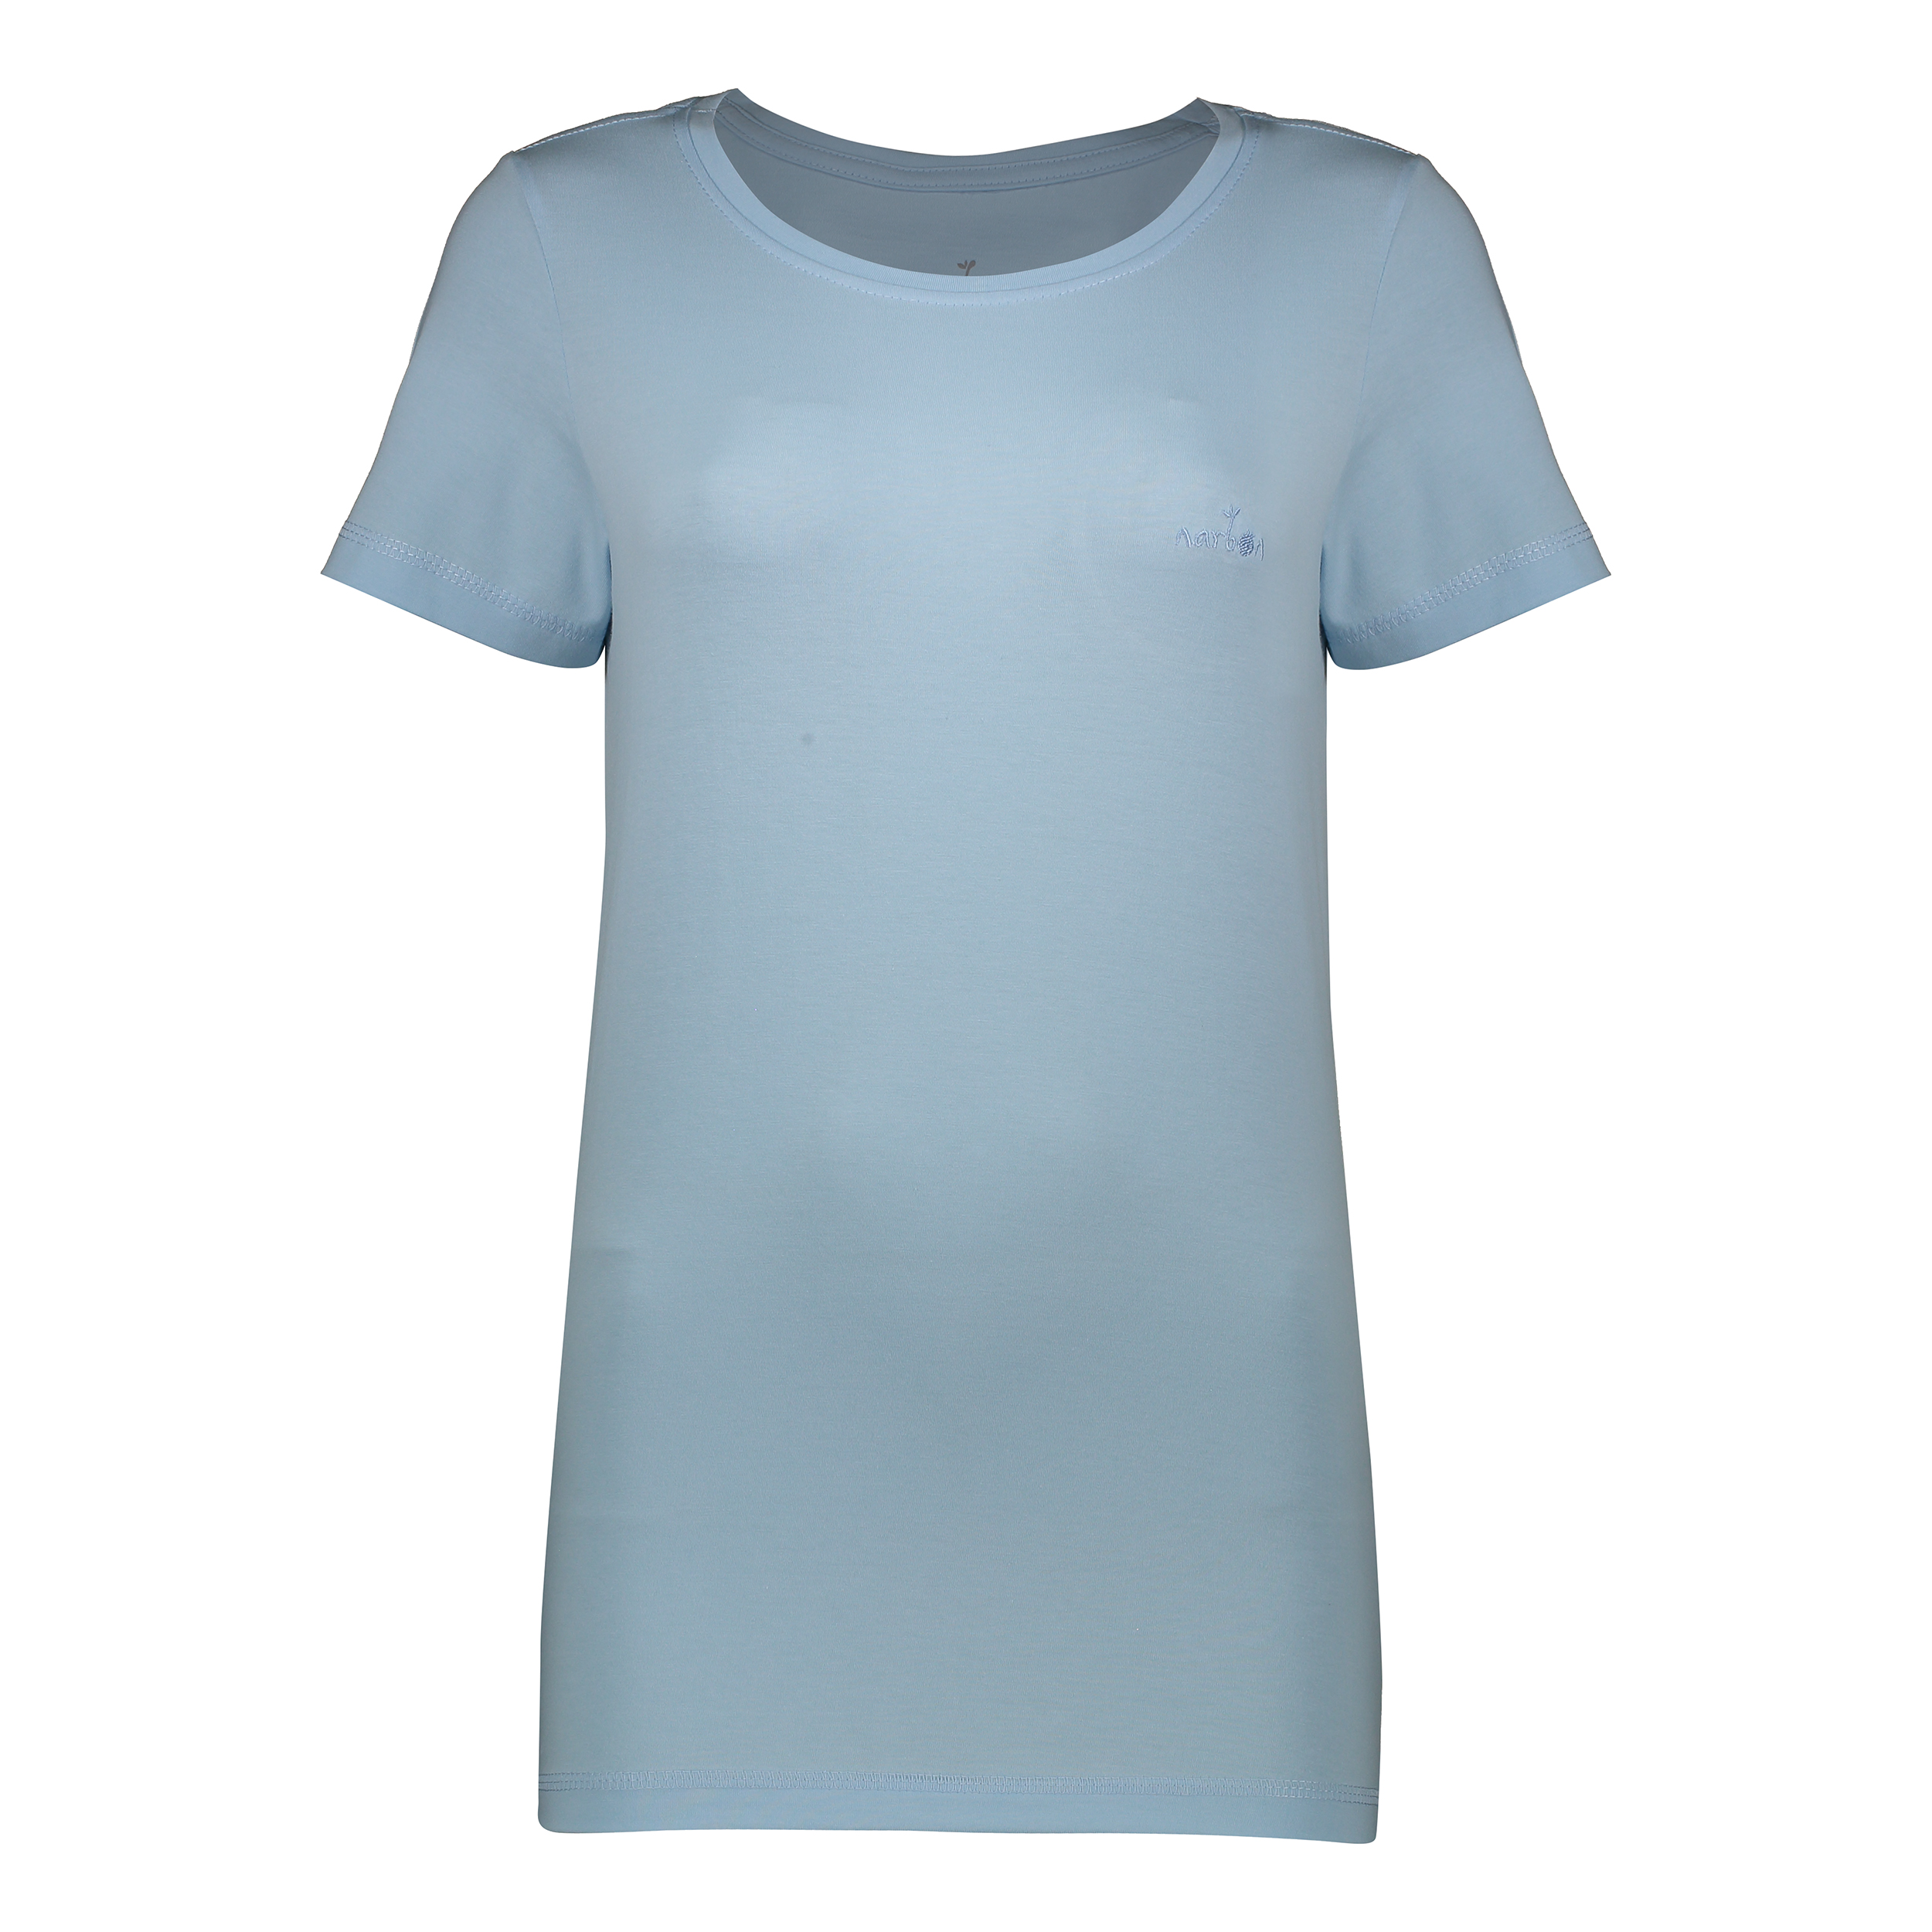 تی شرت آستین کوتاه زنانه ناربن مدل 1521780-3392 رنگ آبی روشن